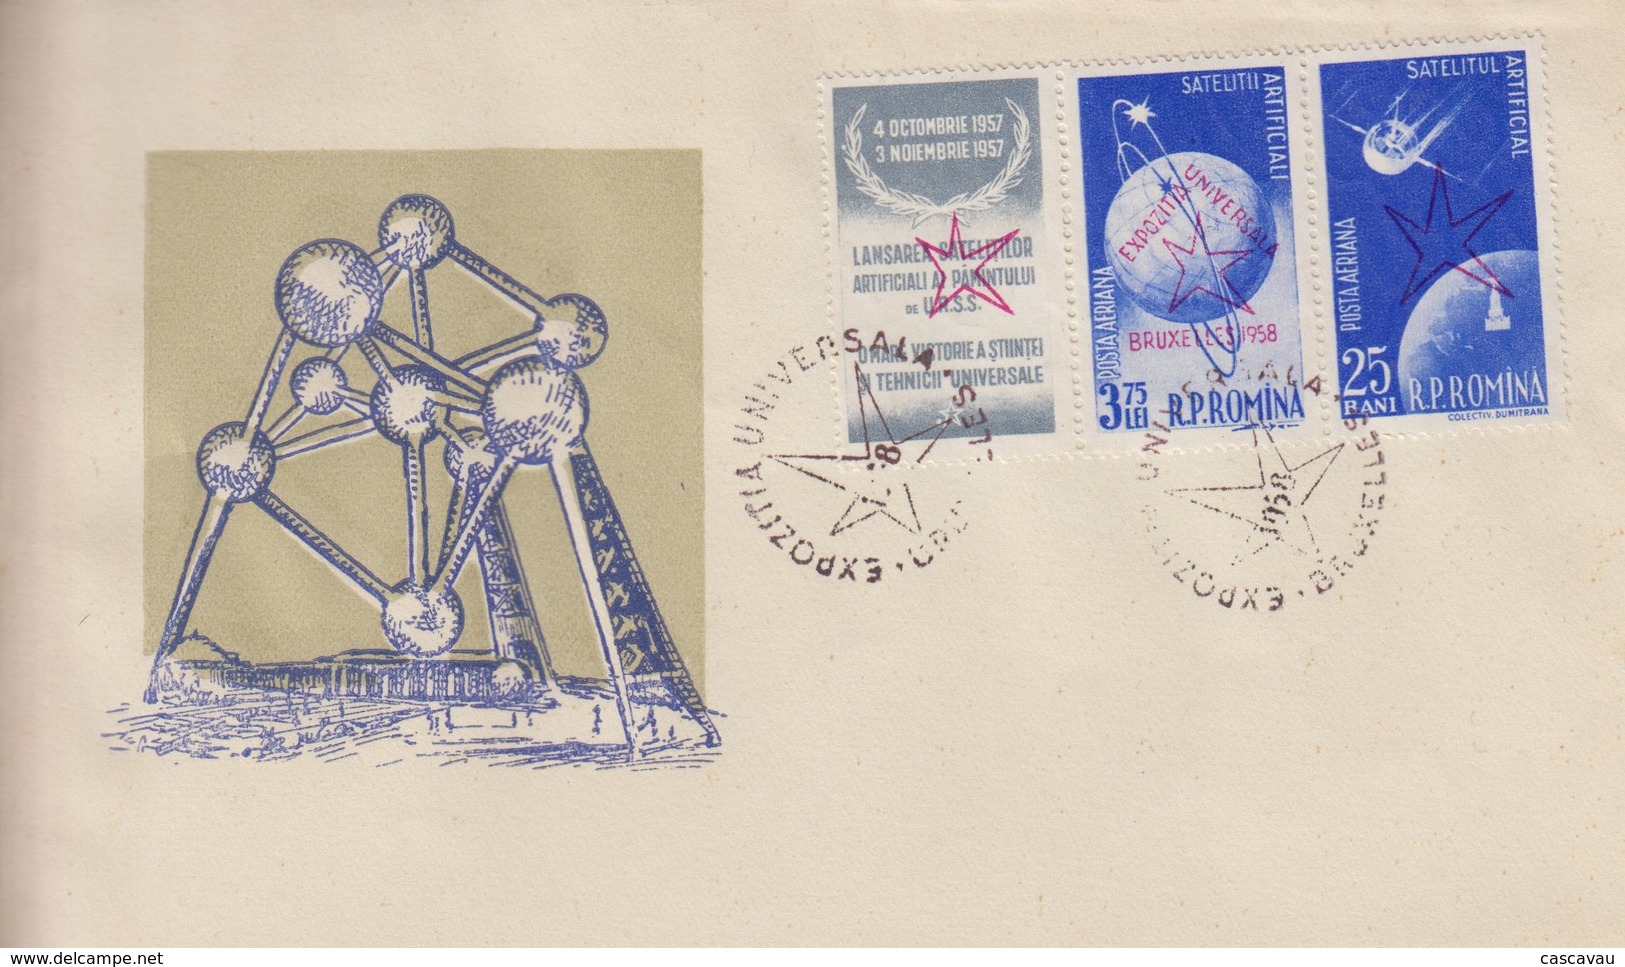 Enveloppe  FDC  1er Jour   ROUMANIE     Exposition  Universelle  BRUXELLES   1958 - 1958 – Brussel (België)